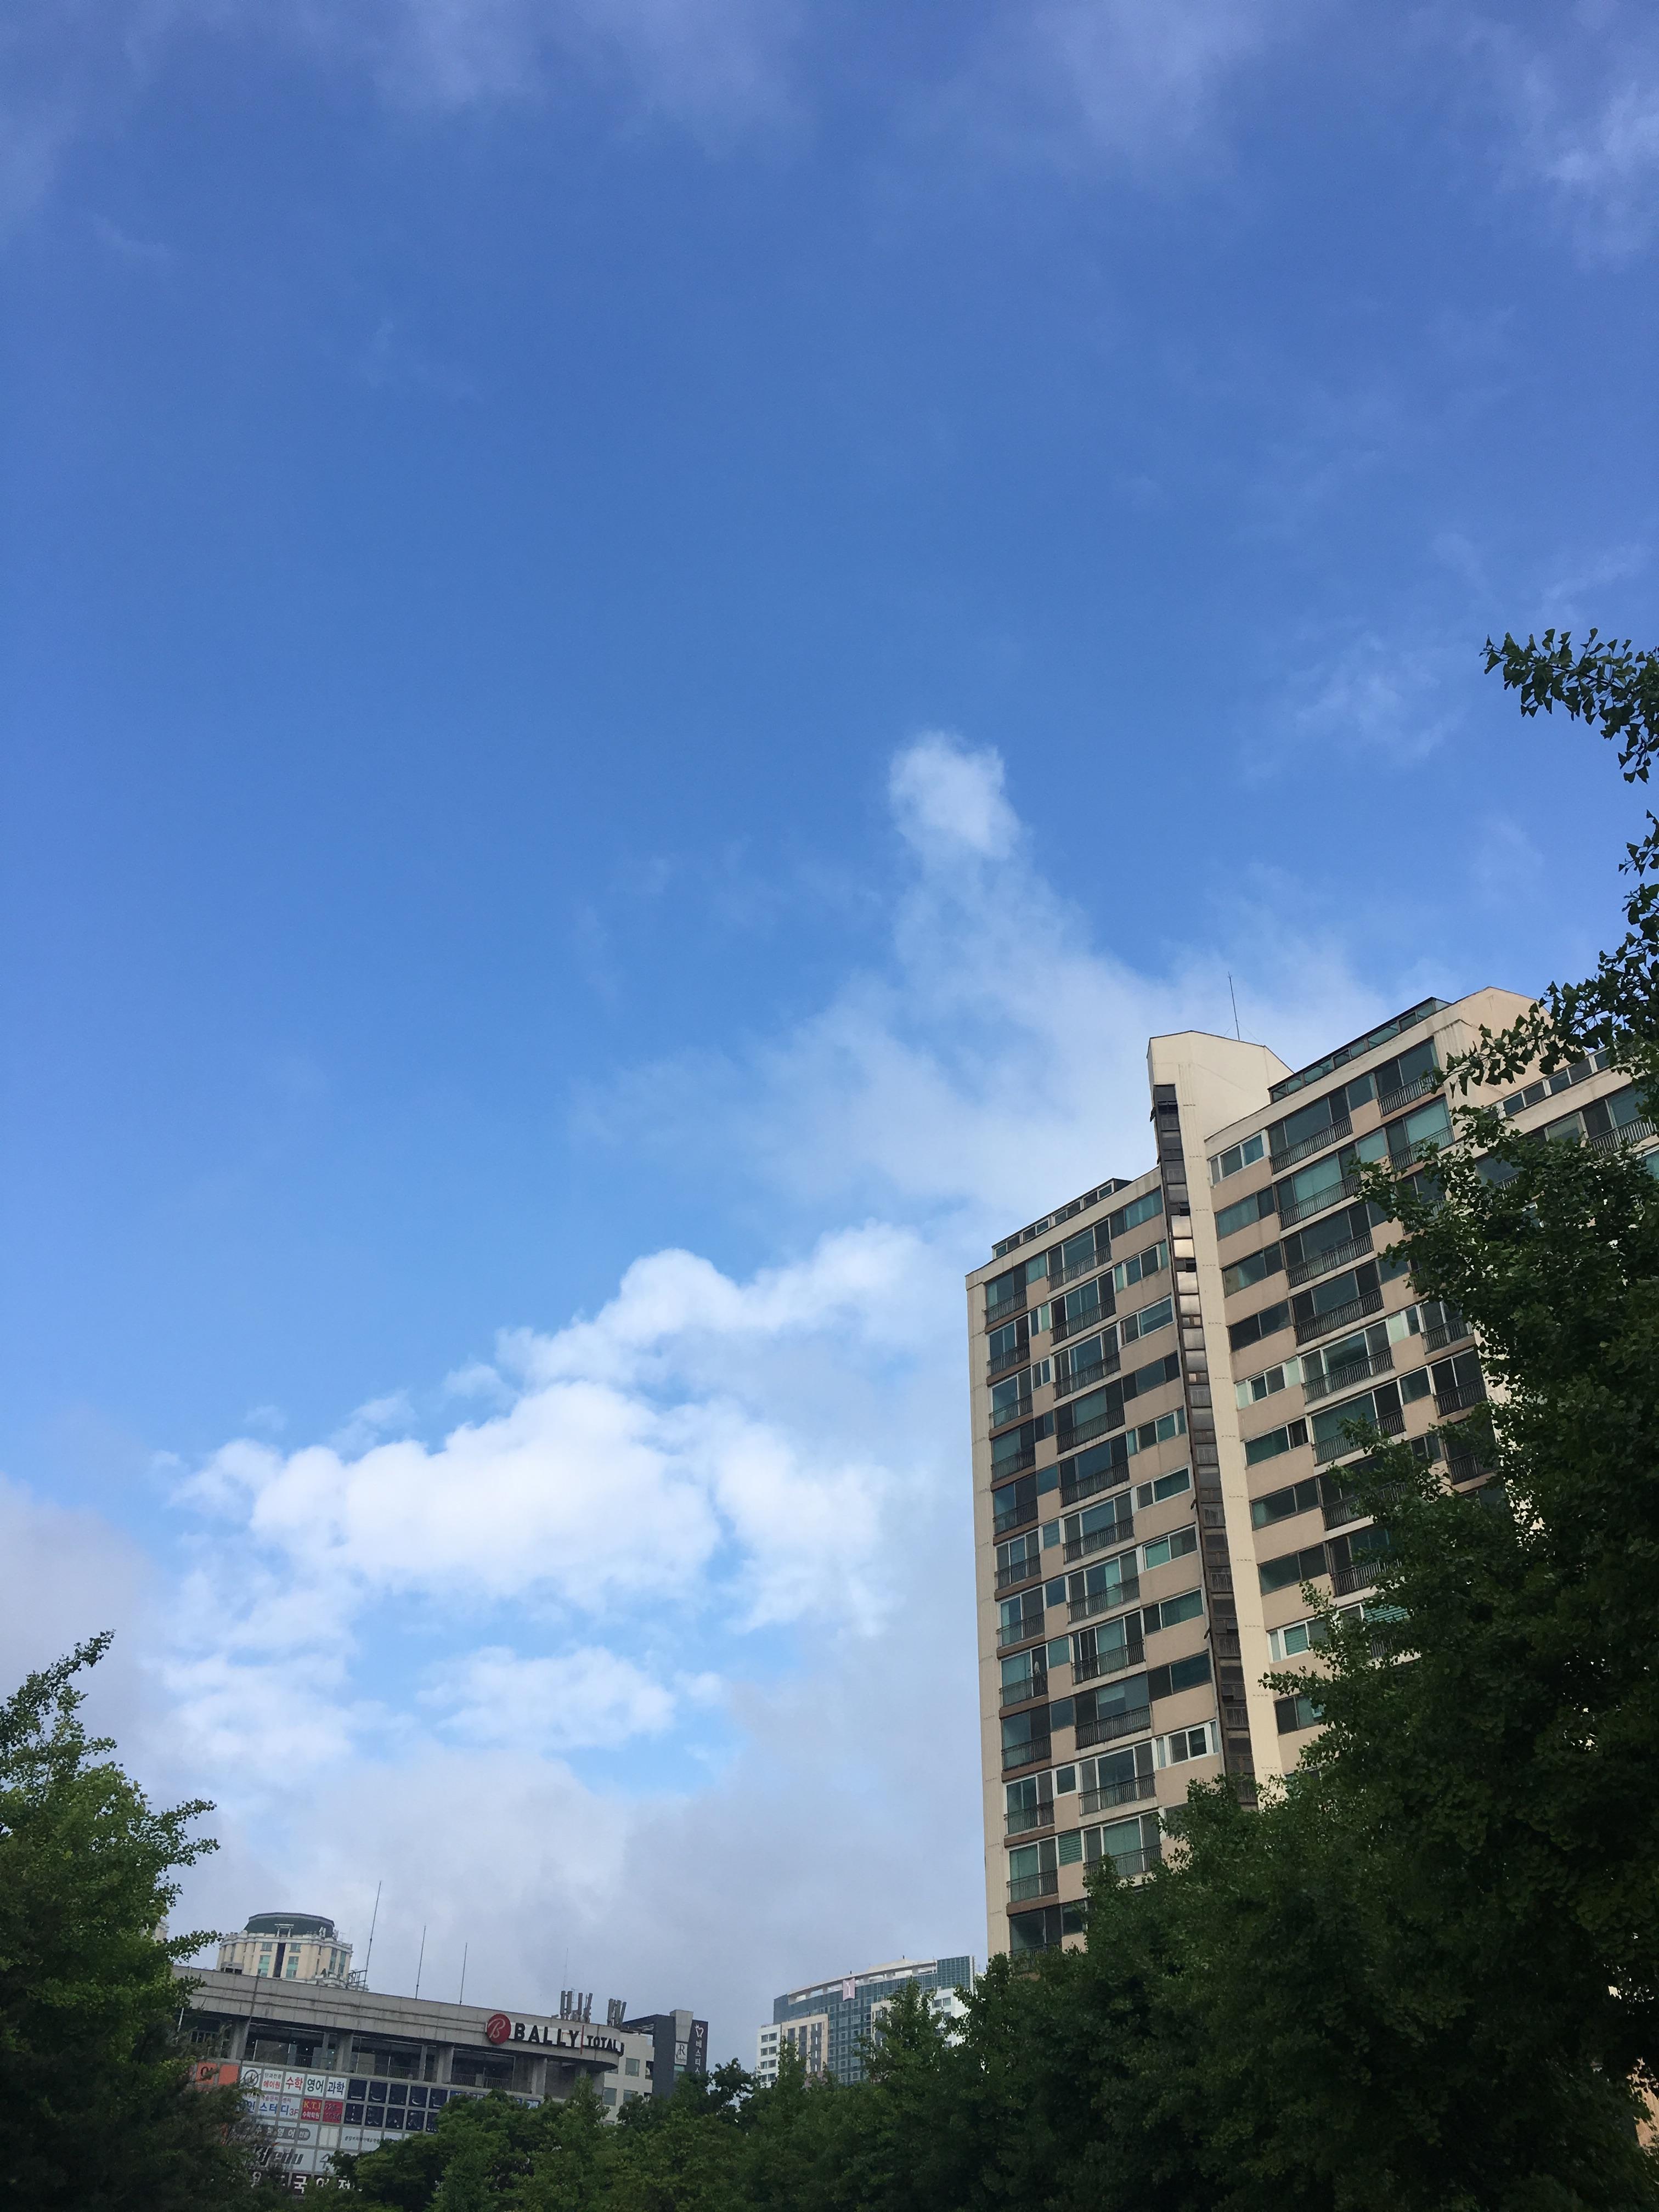 비가 그치고 파란 하늘이 나왔다. 새로운 대한민국에 희망을 가져본다.